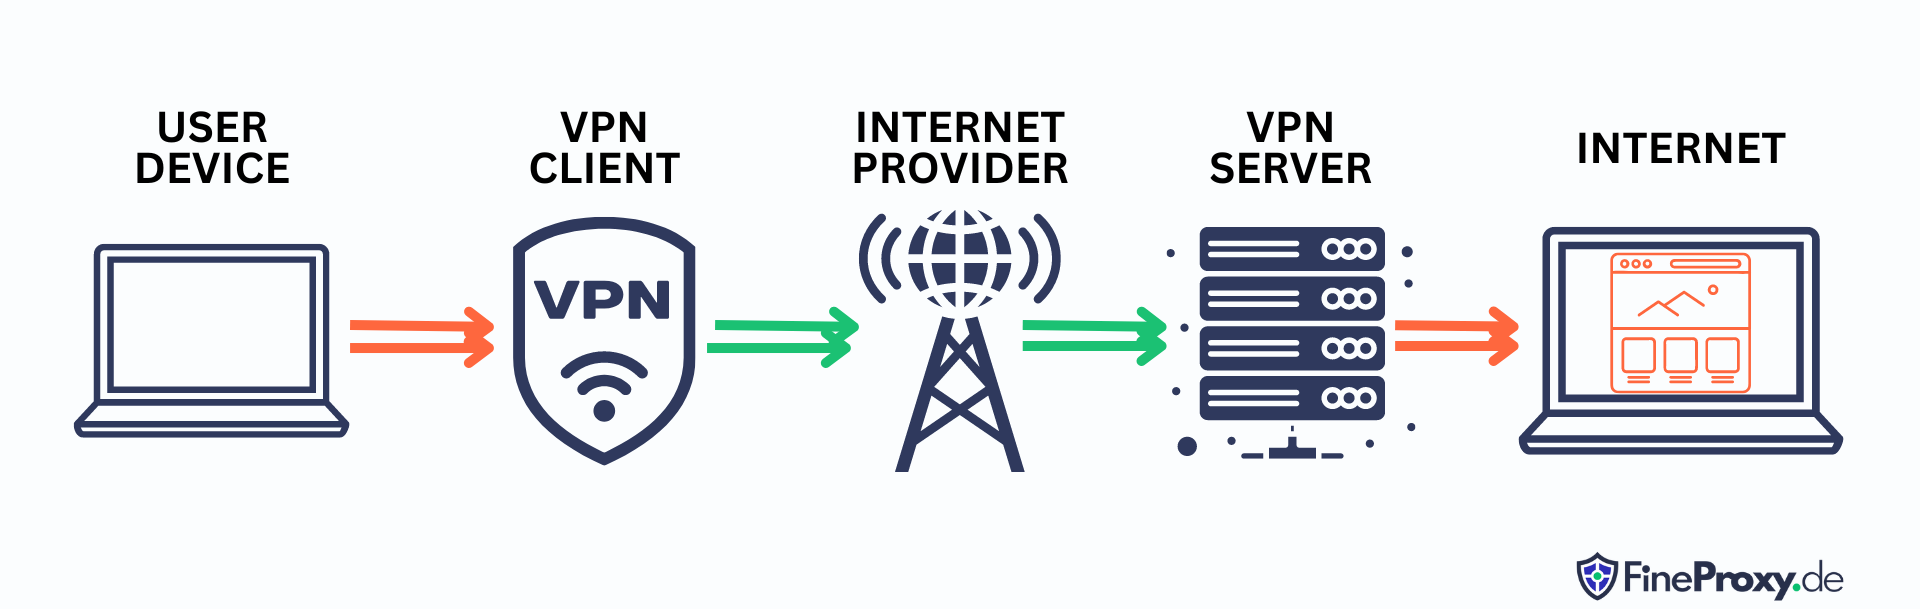 Wie funktioniert ein VPN-Dienst?